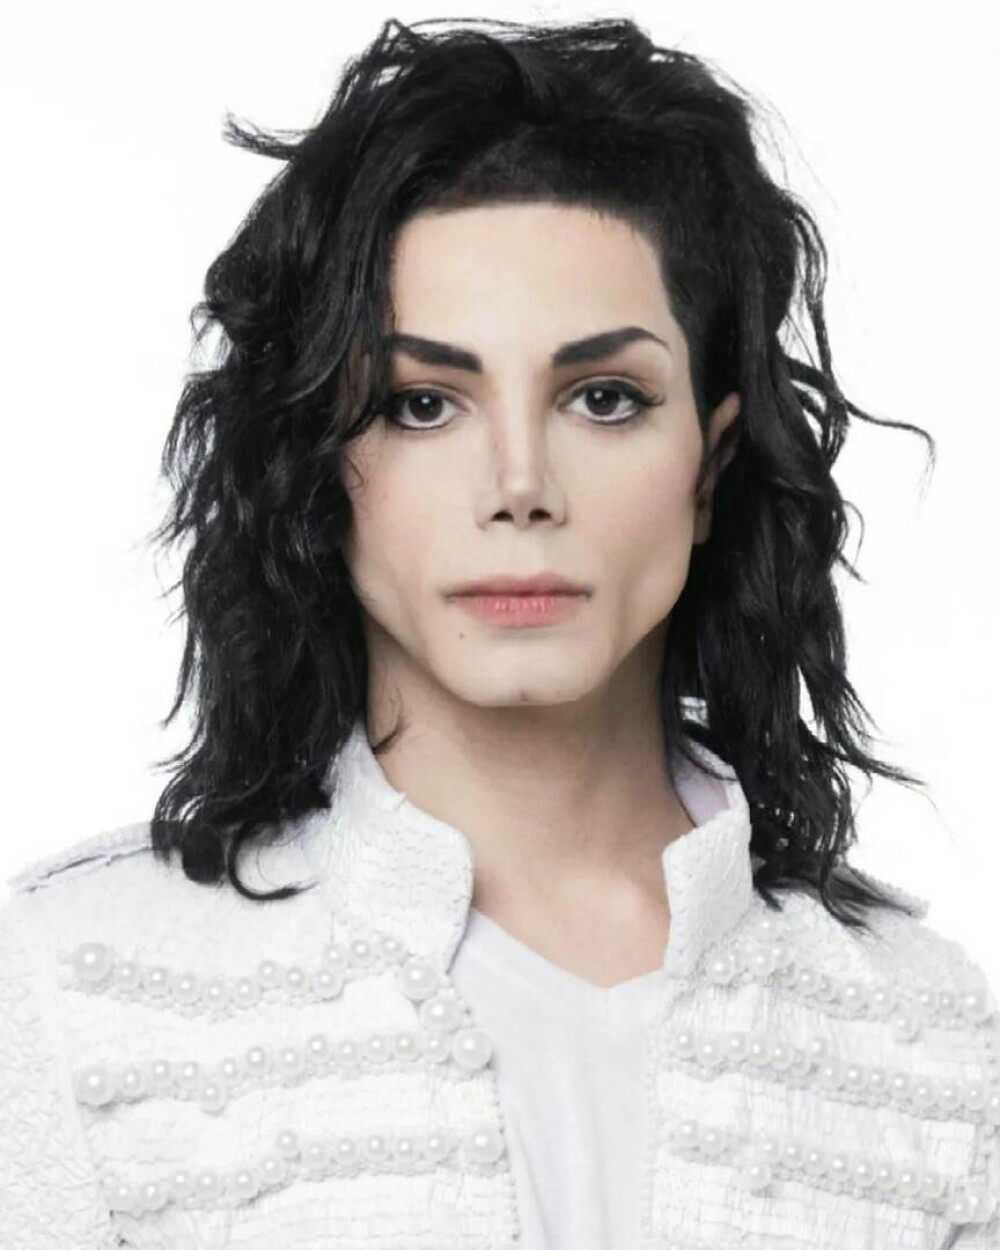 Un tânăr a cheltuit peste 42.000 de dolari ca să arate ca Michael Jackson | GALERIE FOTO - Imaginea 1